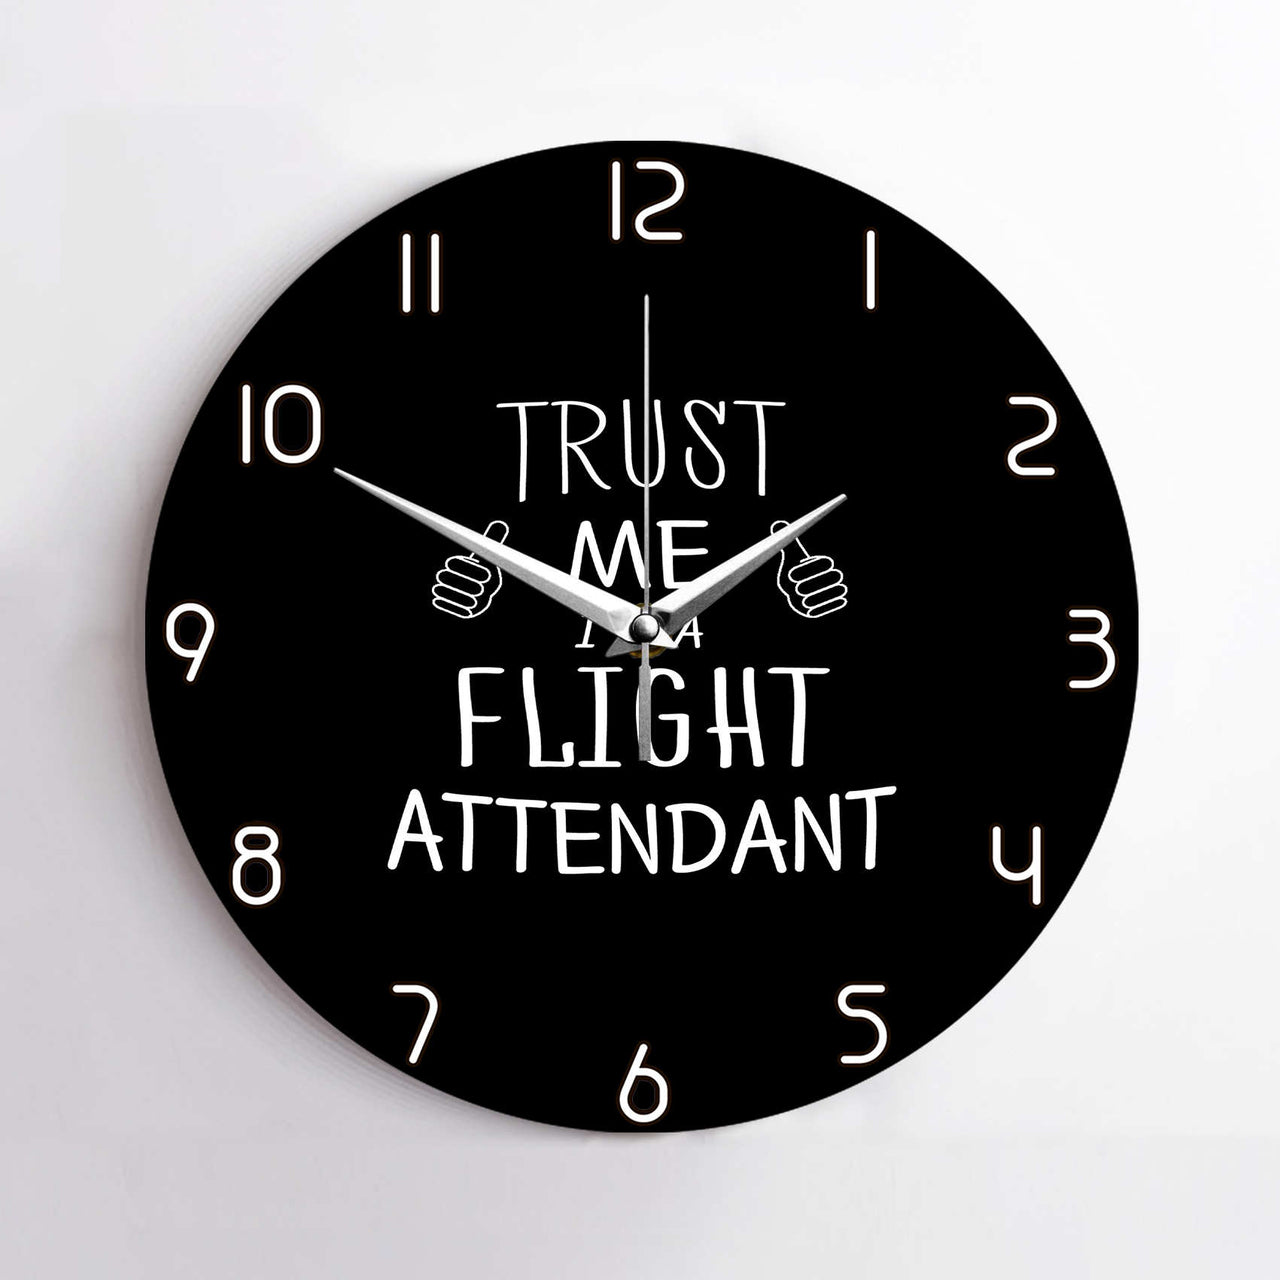 Trust Me I'm a Flight Attendant Designed Wall Clocks